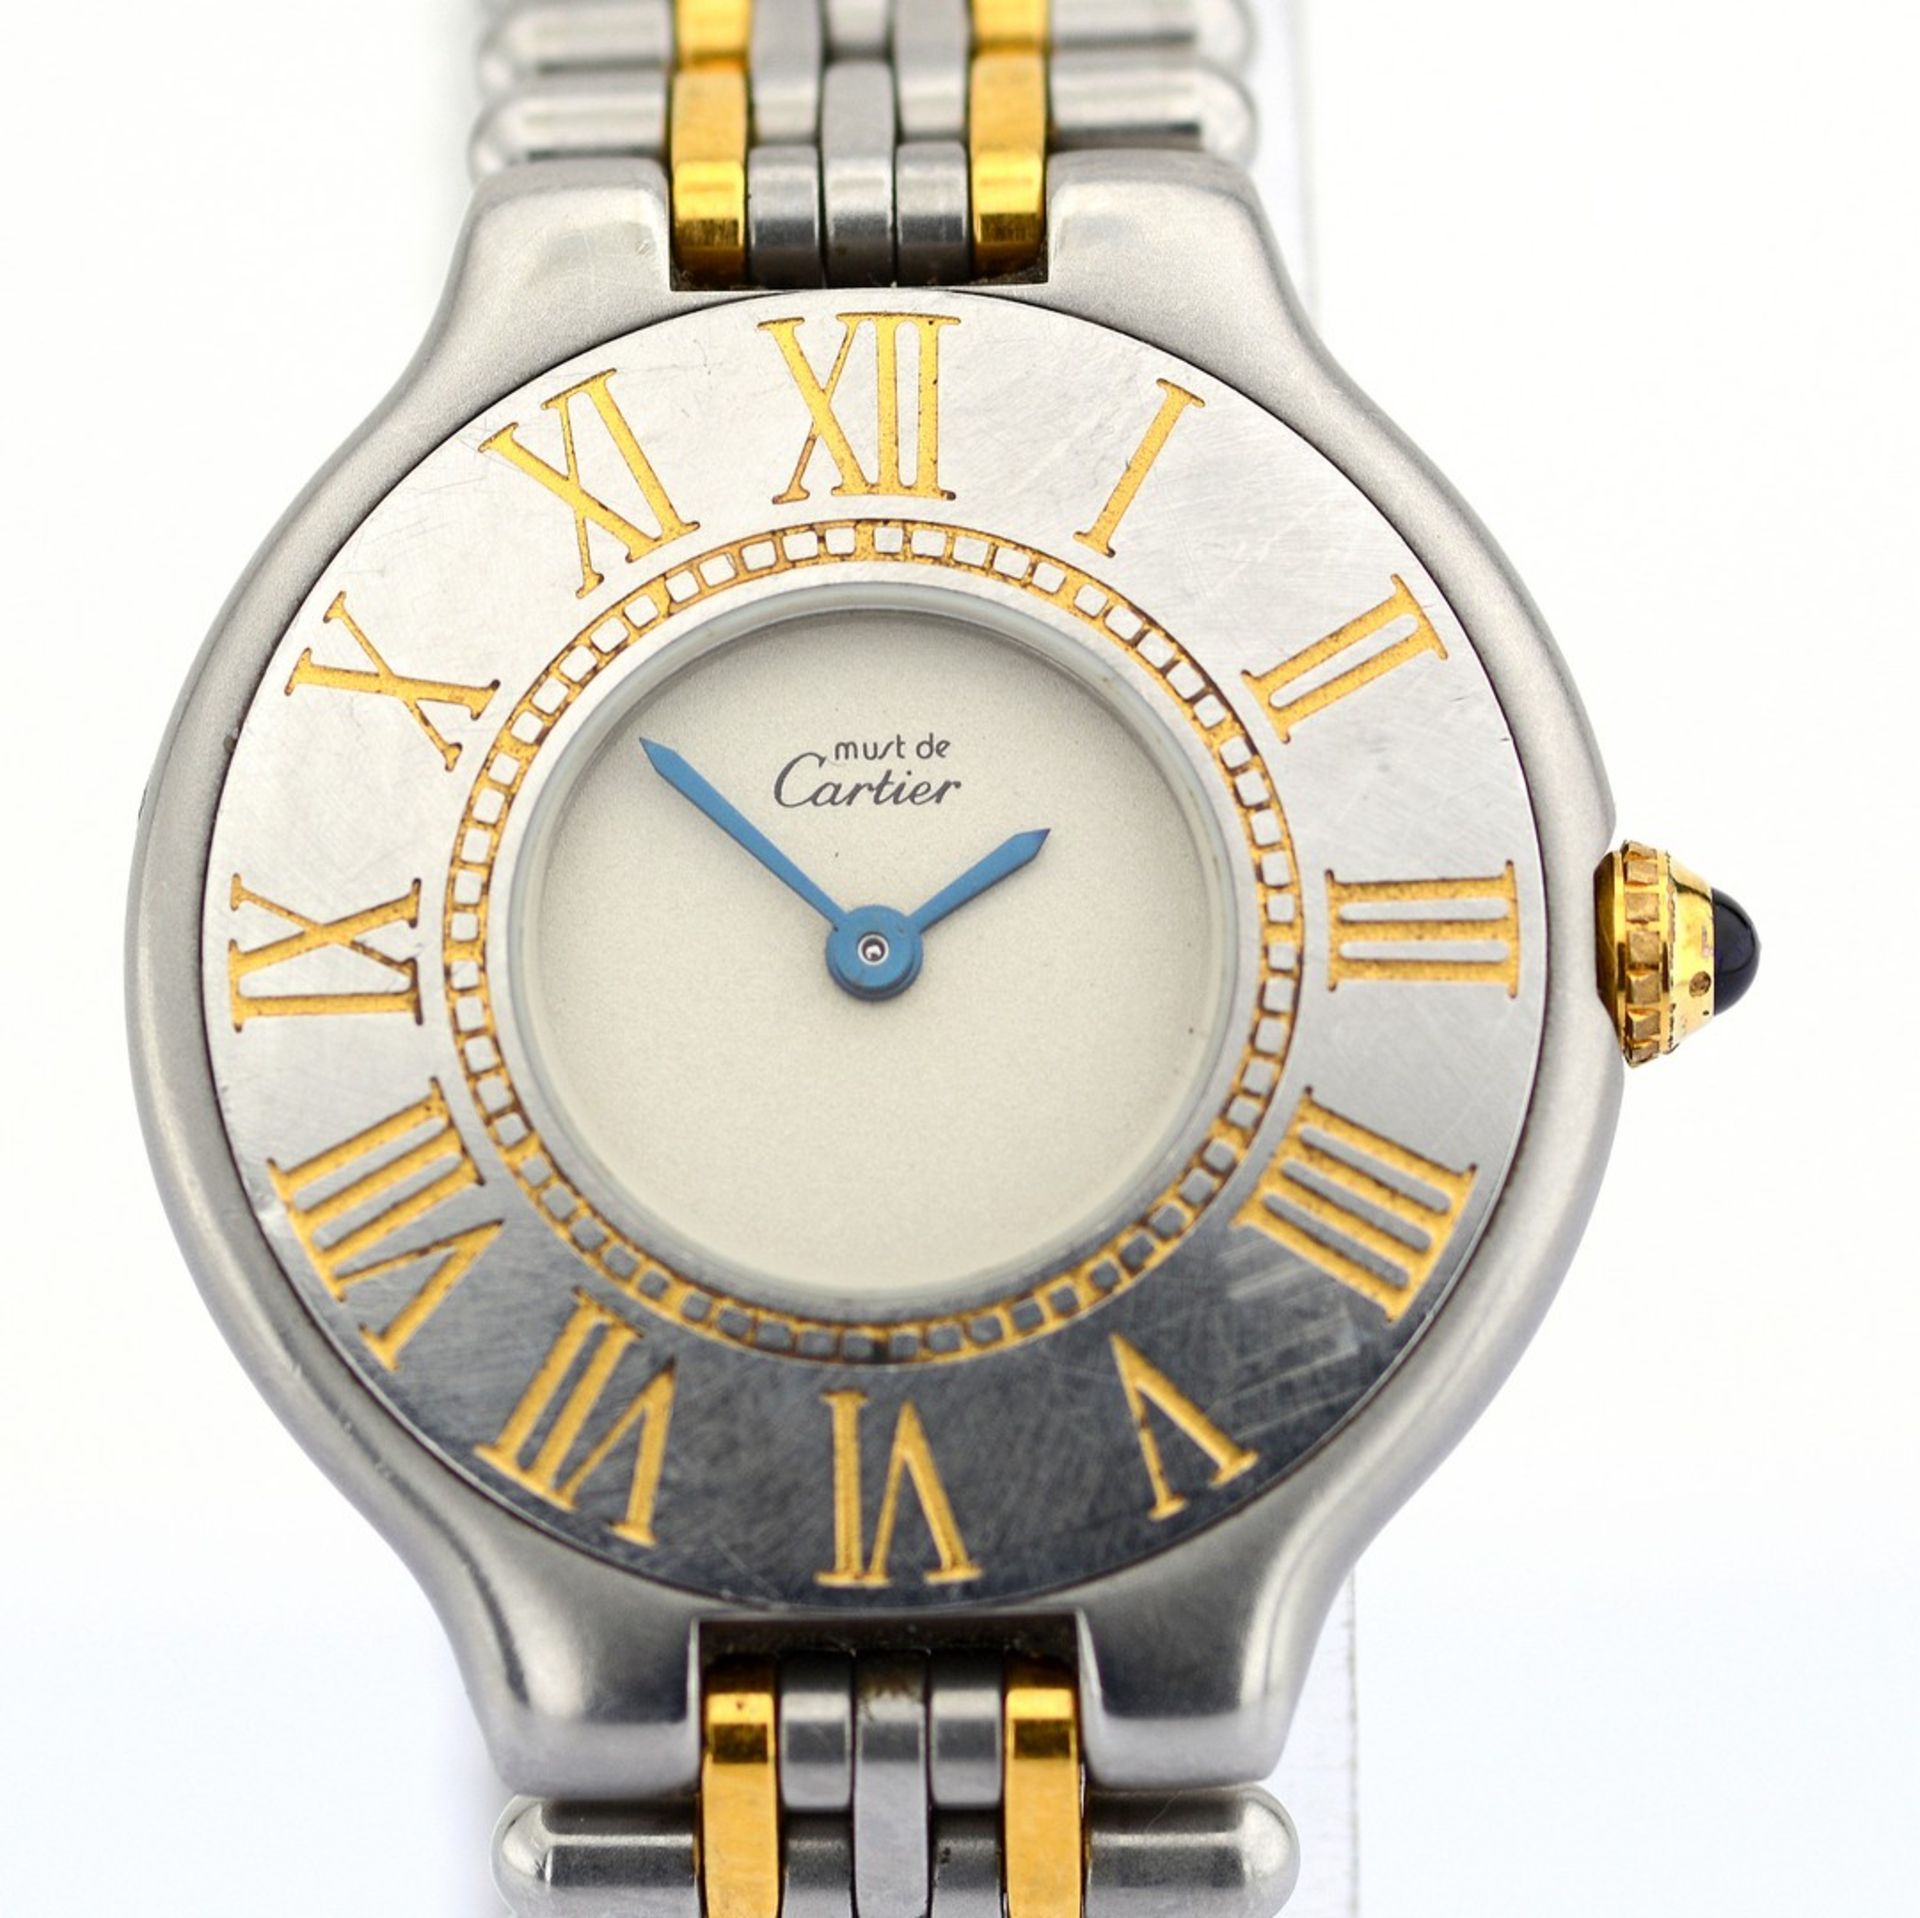 Cartier / Must de 21 - Lady's Gold/Steel Wrist Watch - Image 3 of 8